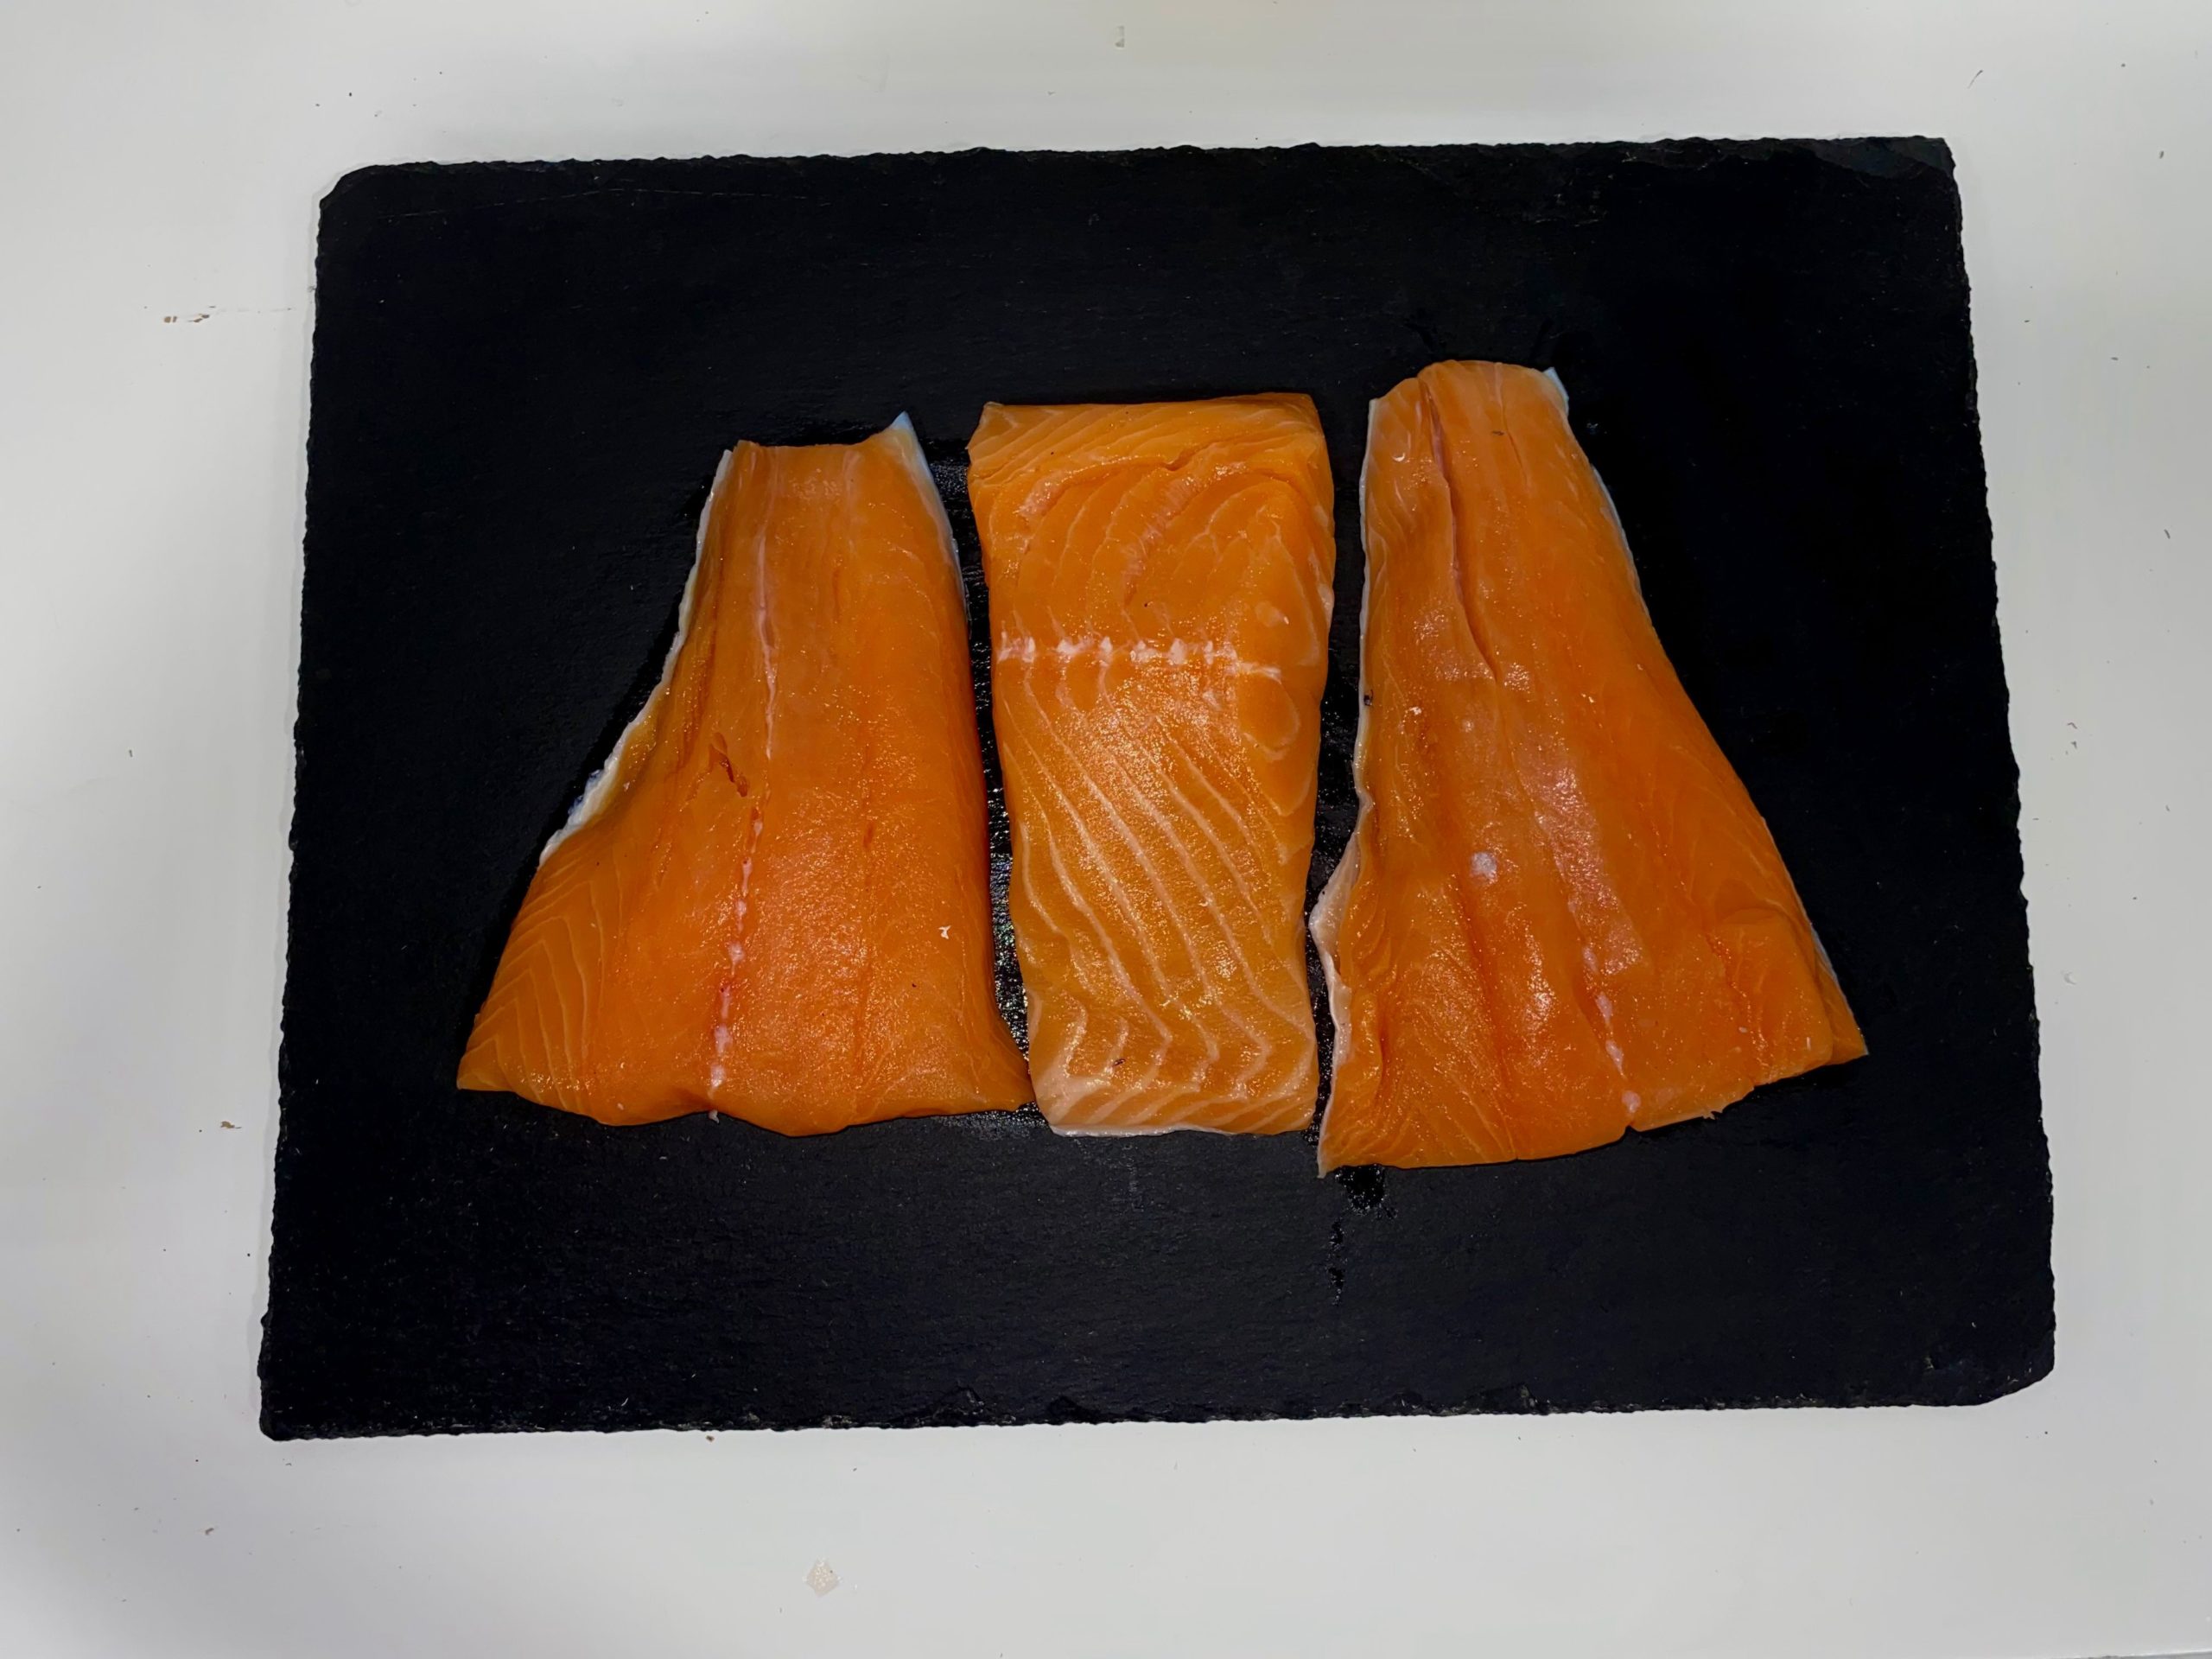 Sustainable Blue Atlantic Salmon (1.5 lbs frozen)